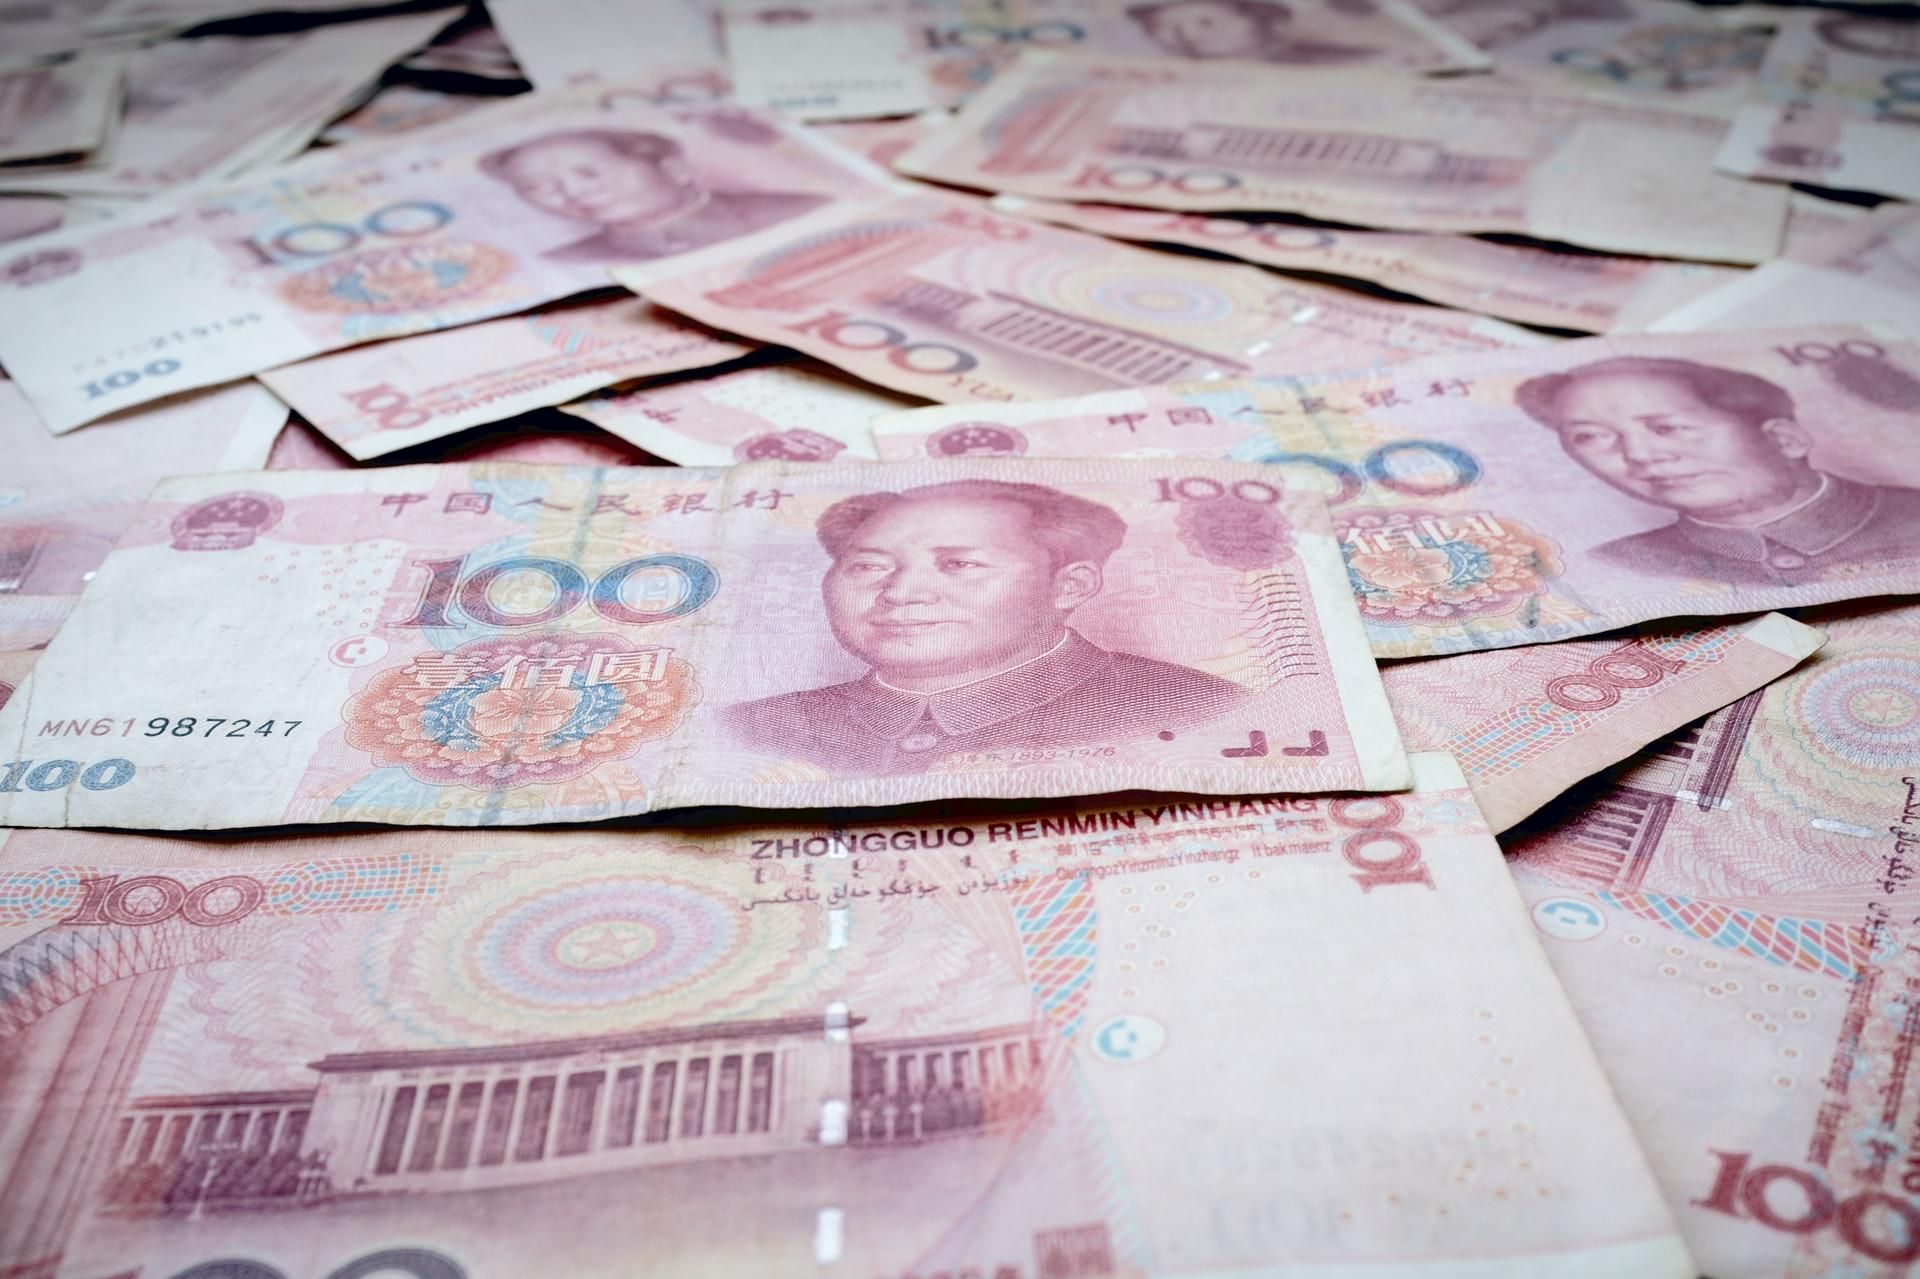 Інвестори масово продають китайські акції: в країні рекордні відпливи іноземного капіталу - Економіка